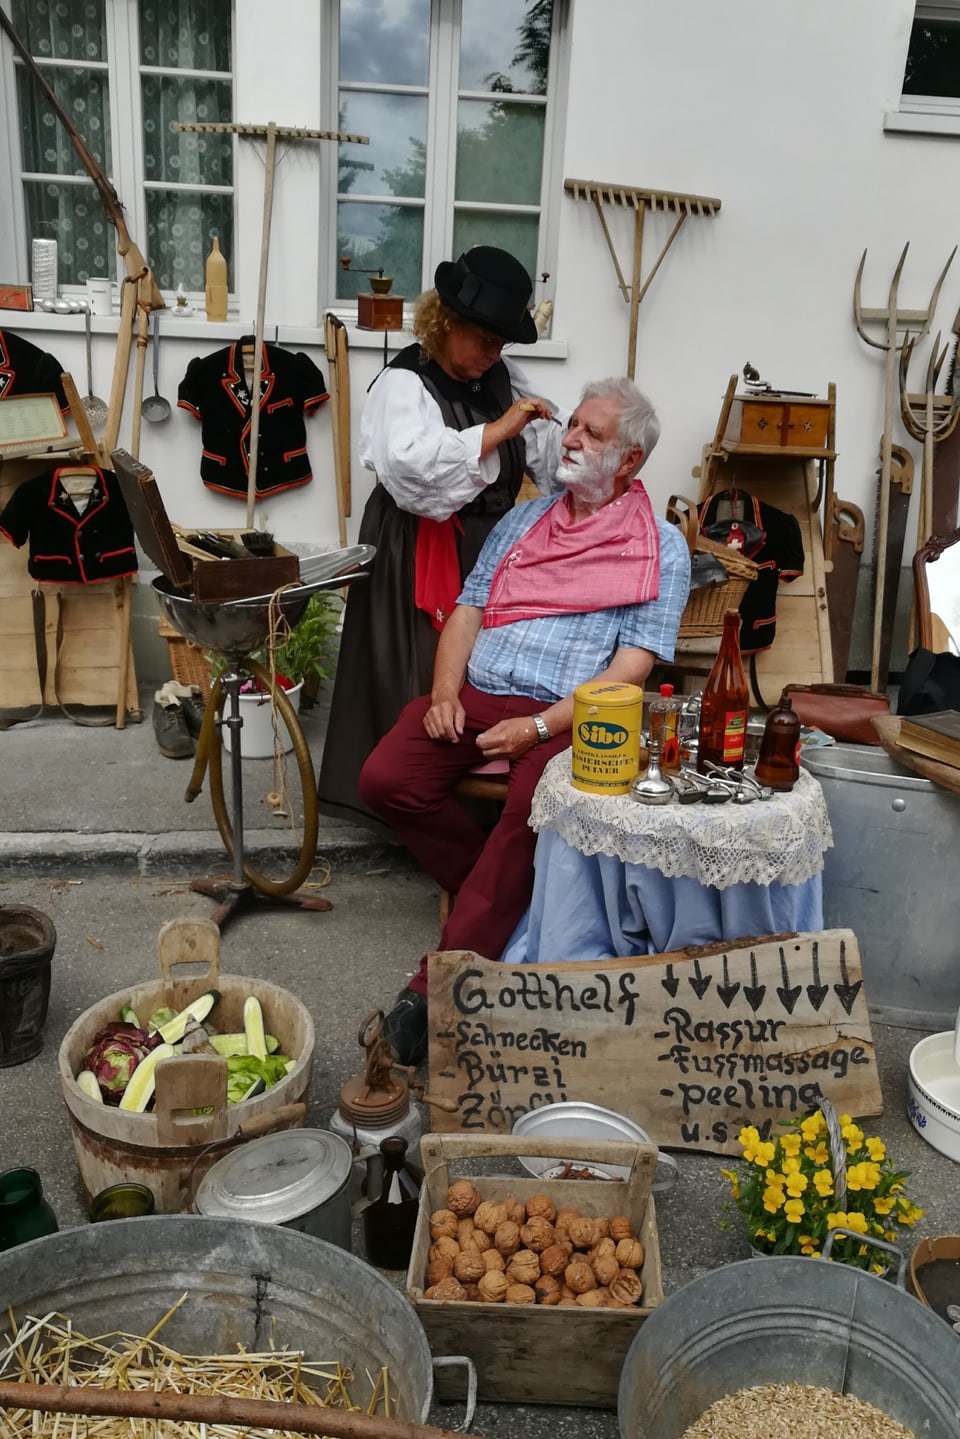 Frau rasiert einem Mann nach alter Tradition den Bart